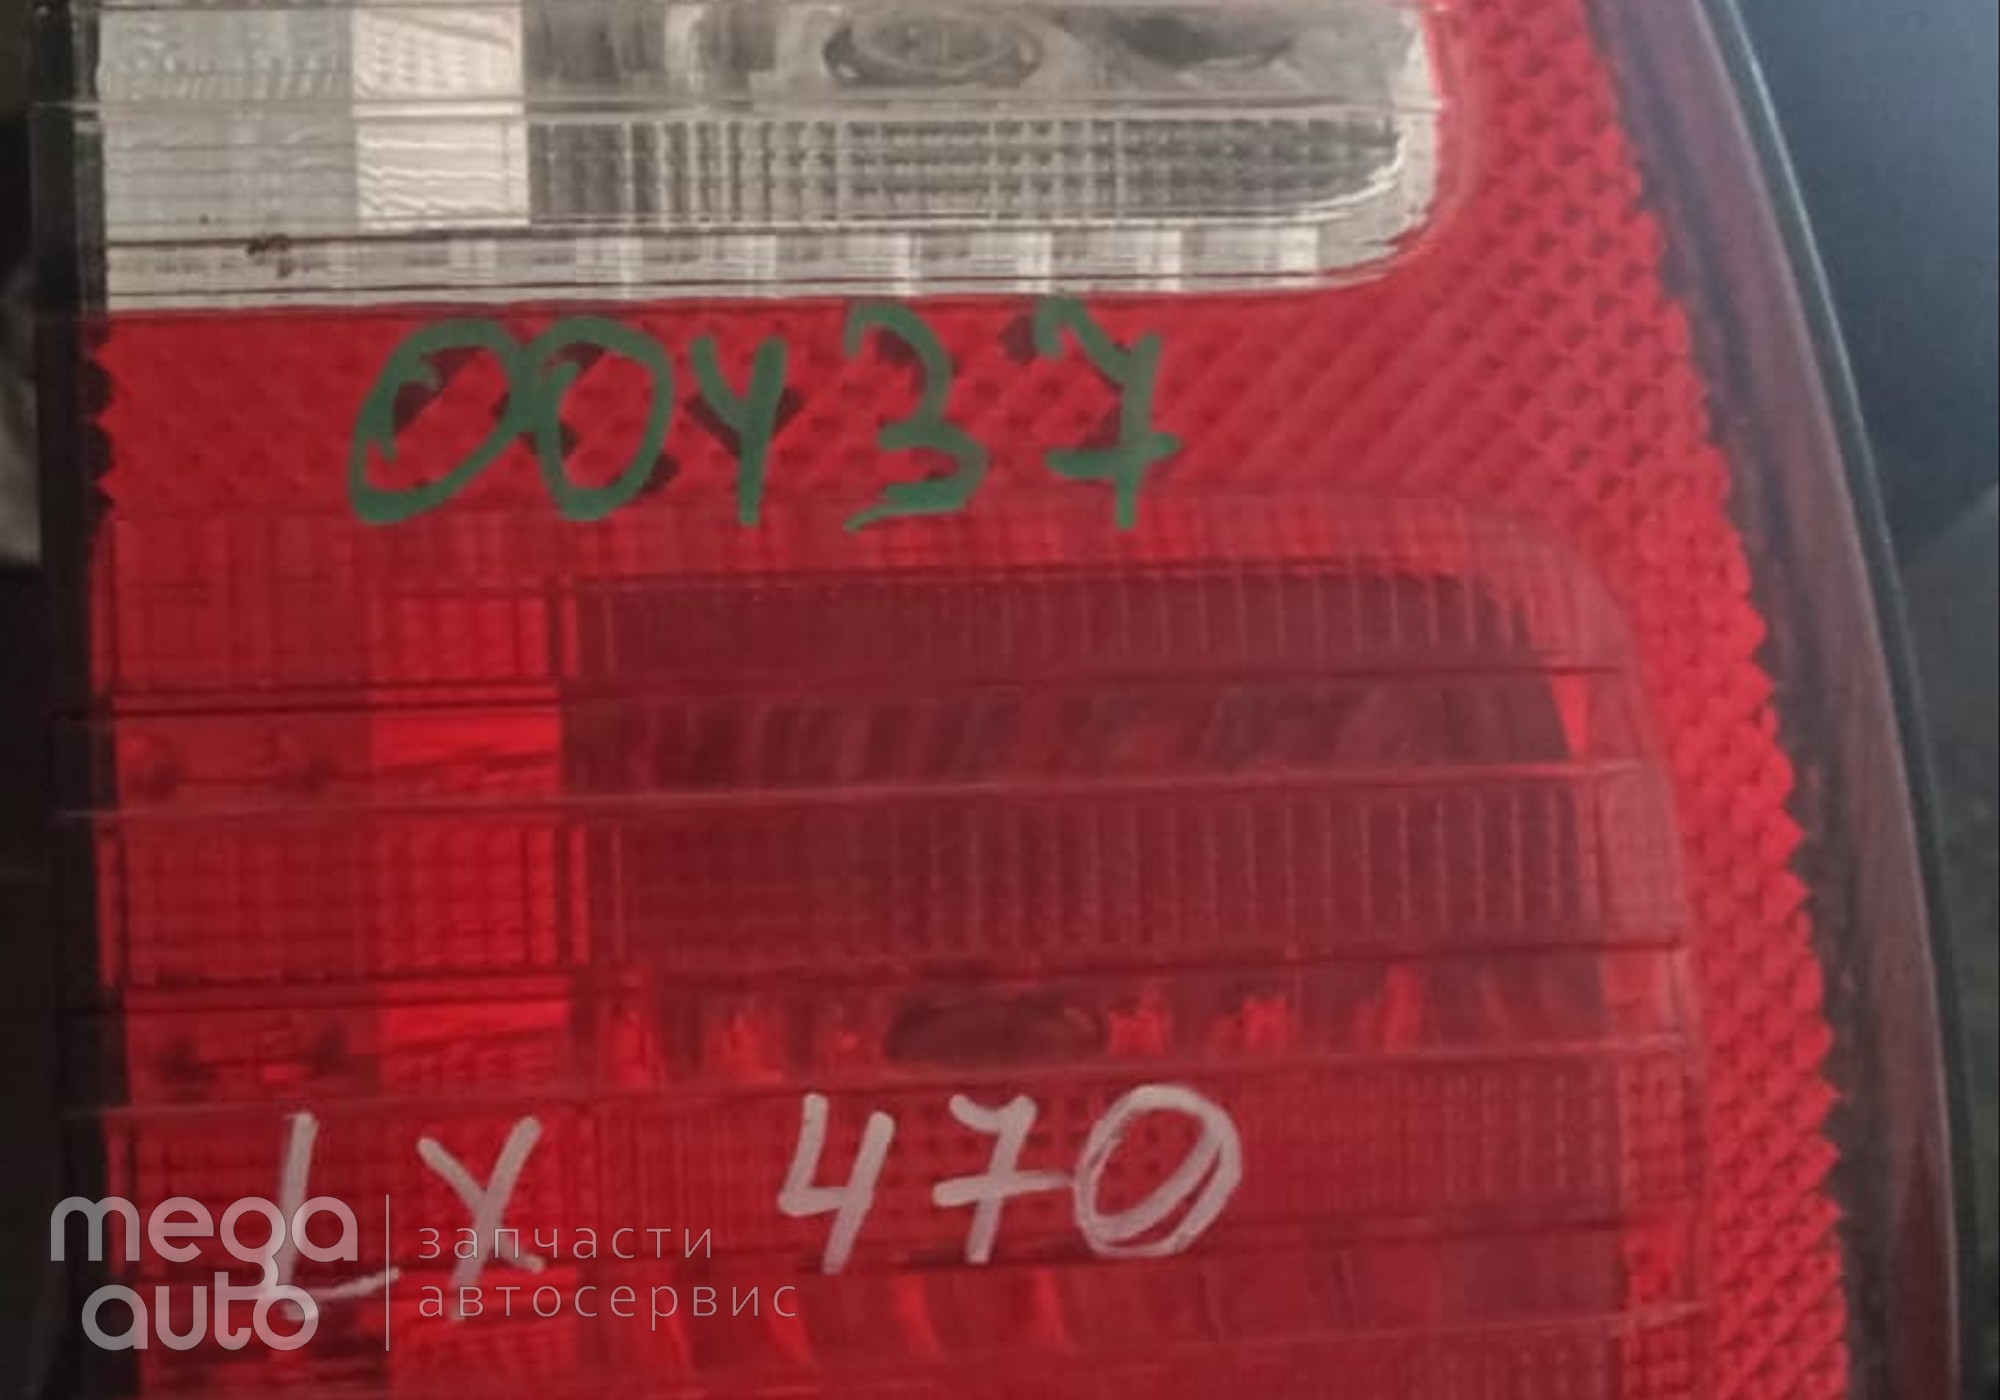 8158160171 Фонарь задний правый внутренний лексус 470 , крузак 100 для Toyota Land Cruiser 100 (с 1998 по 2007)